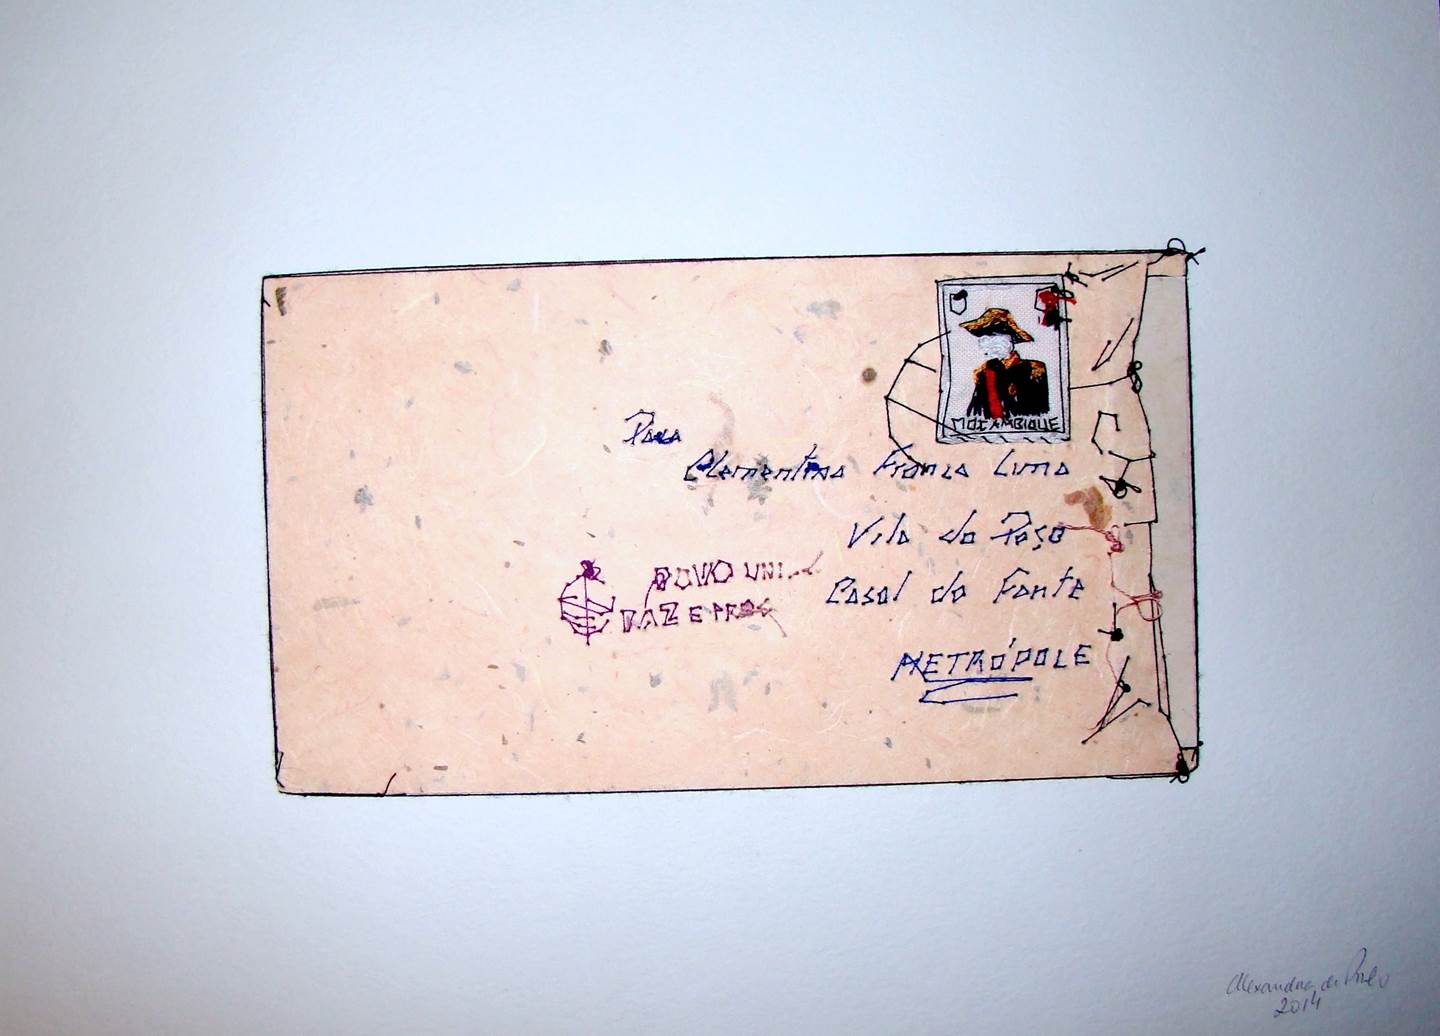 Carta de Moçambique, original   Dibujo e Ilustración de Alexandra de Pinho